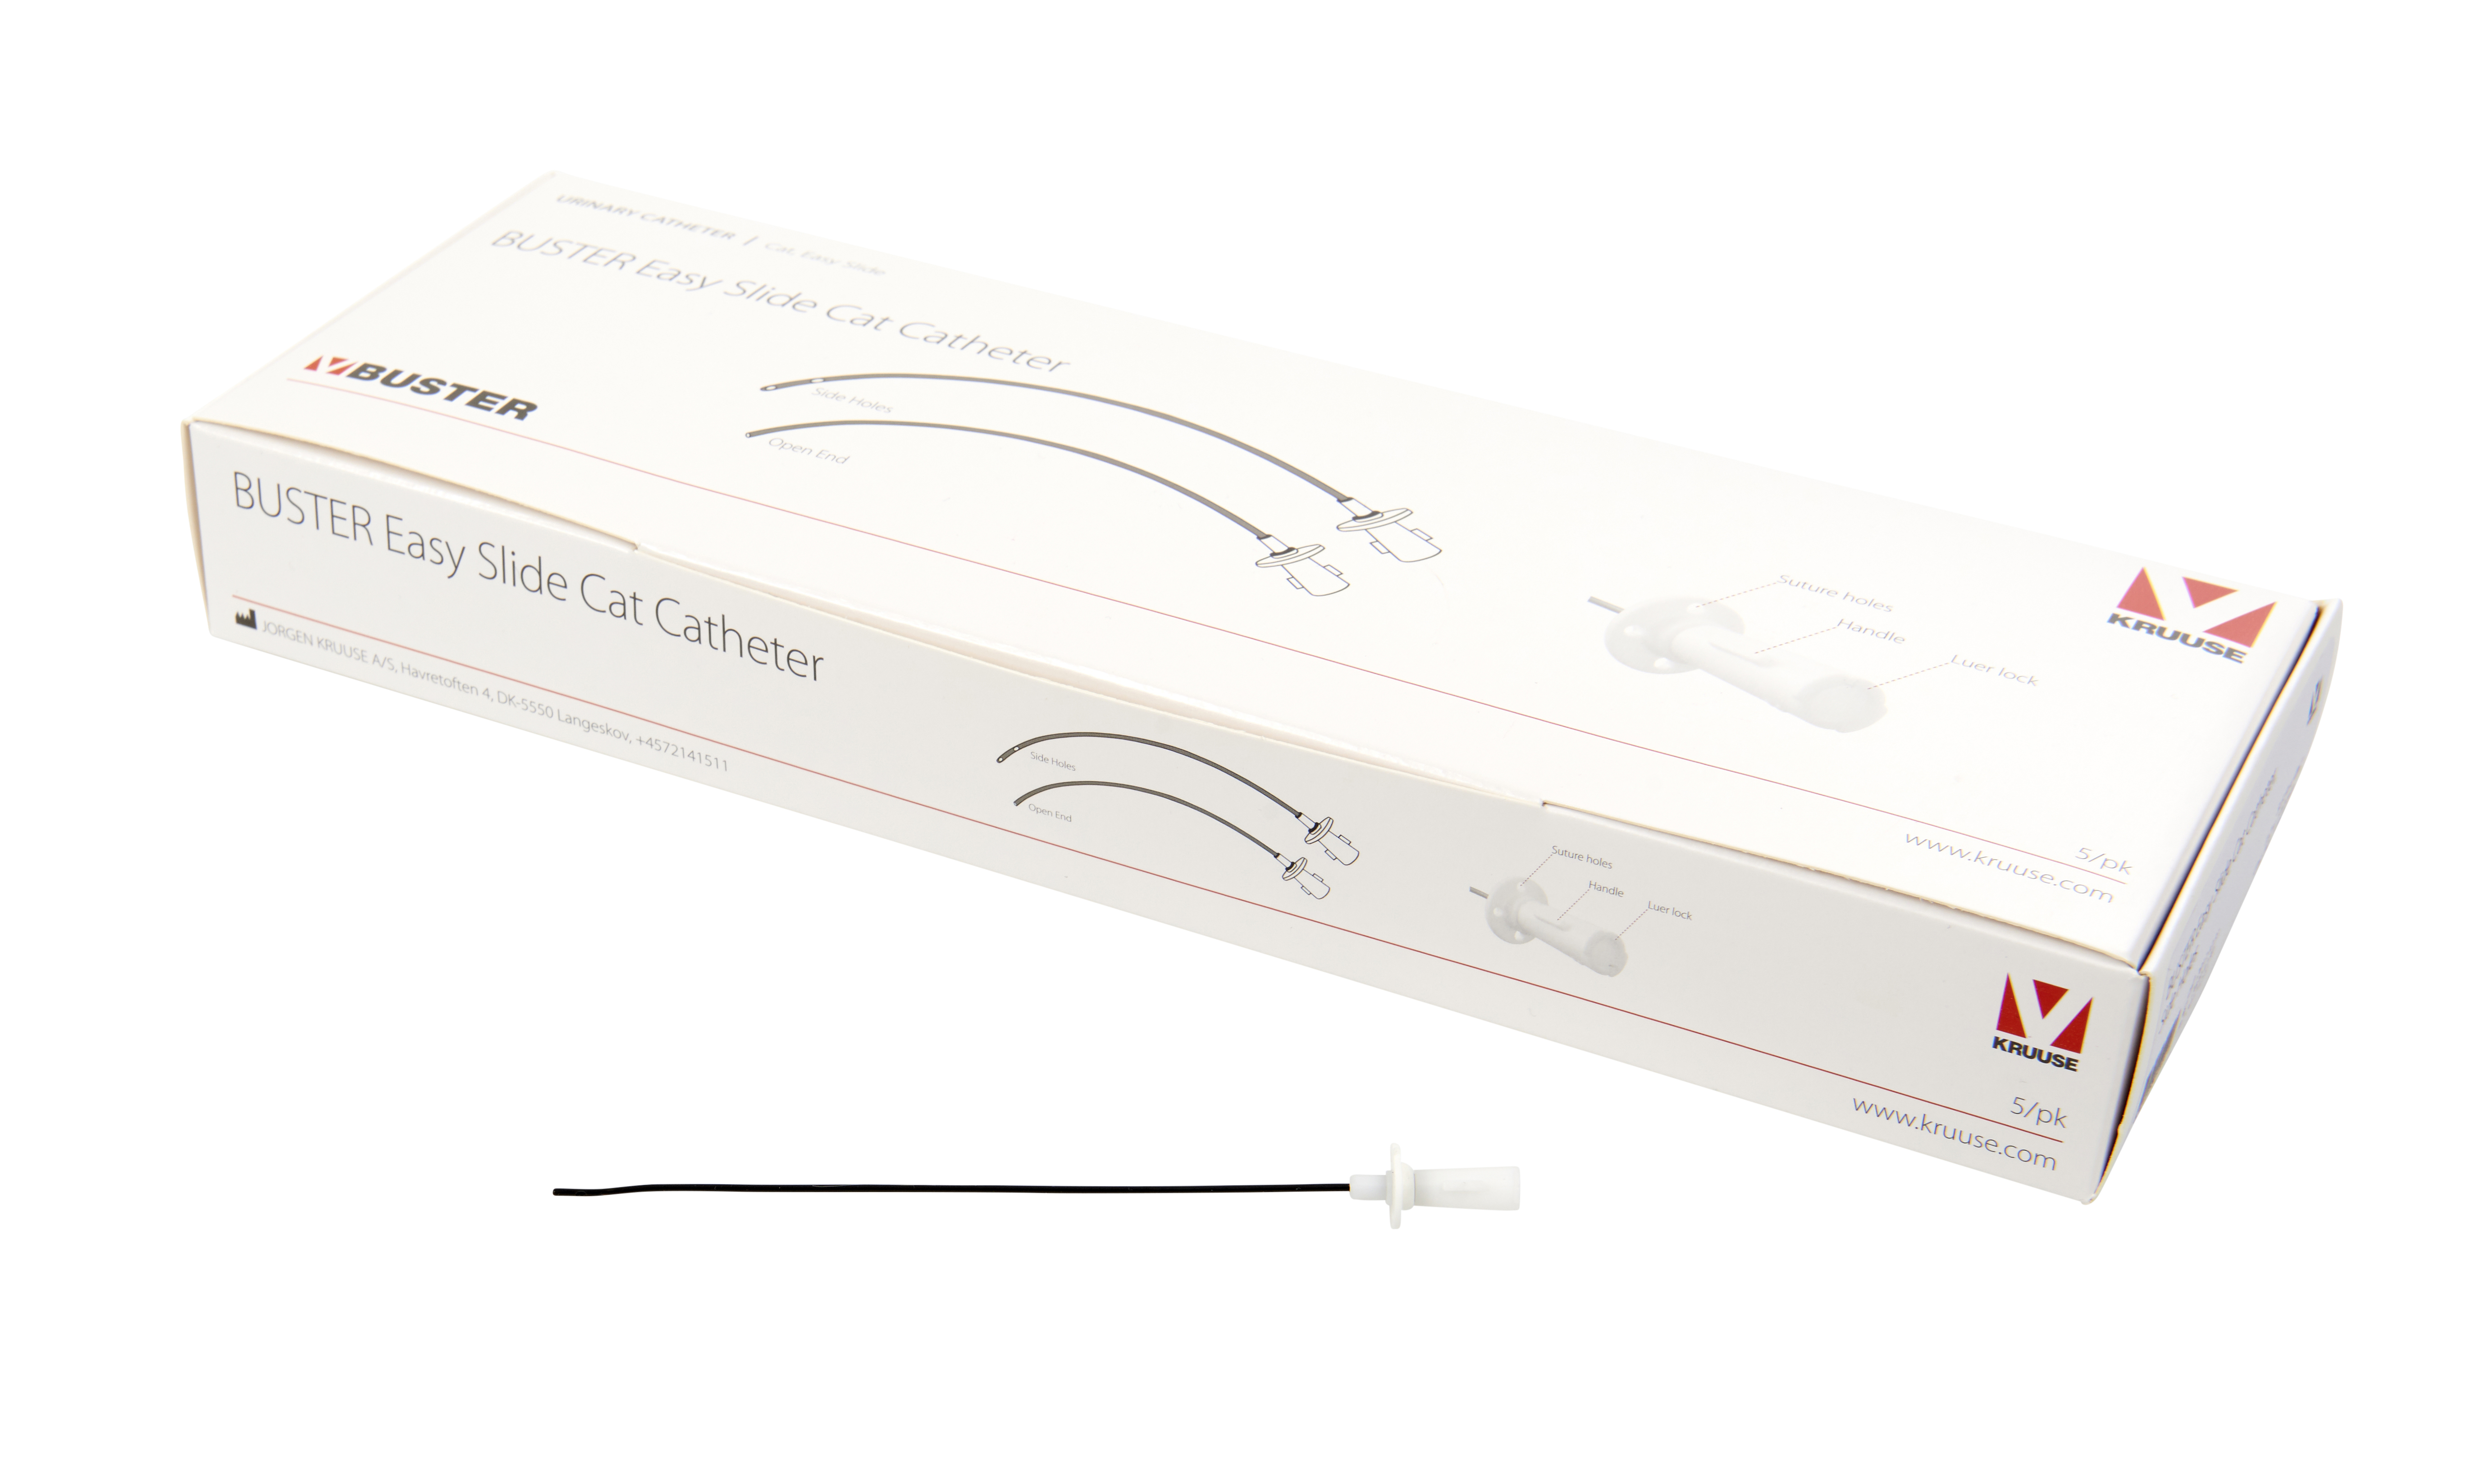 BUSTER Easy Slide Cat Catheter, 1.2 x 110 mm/3.5 Fr x 4,33, side holes, 5/pk